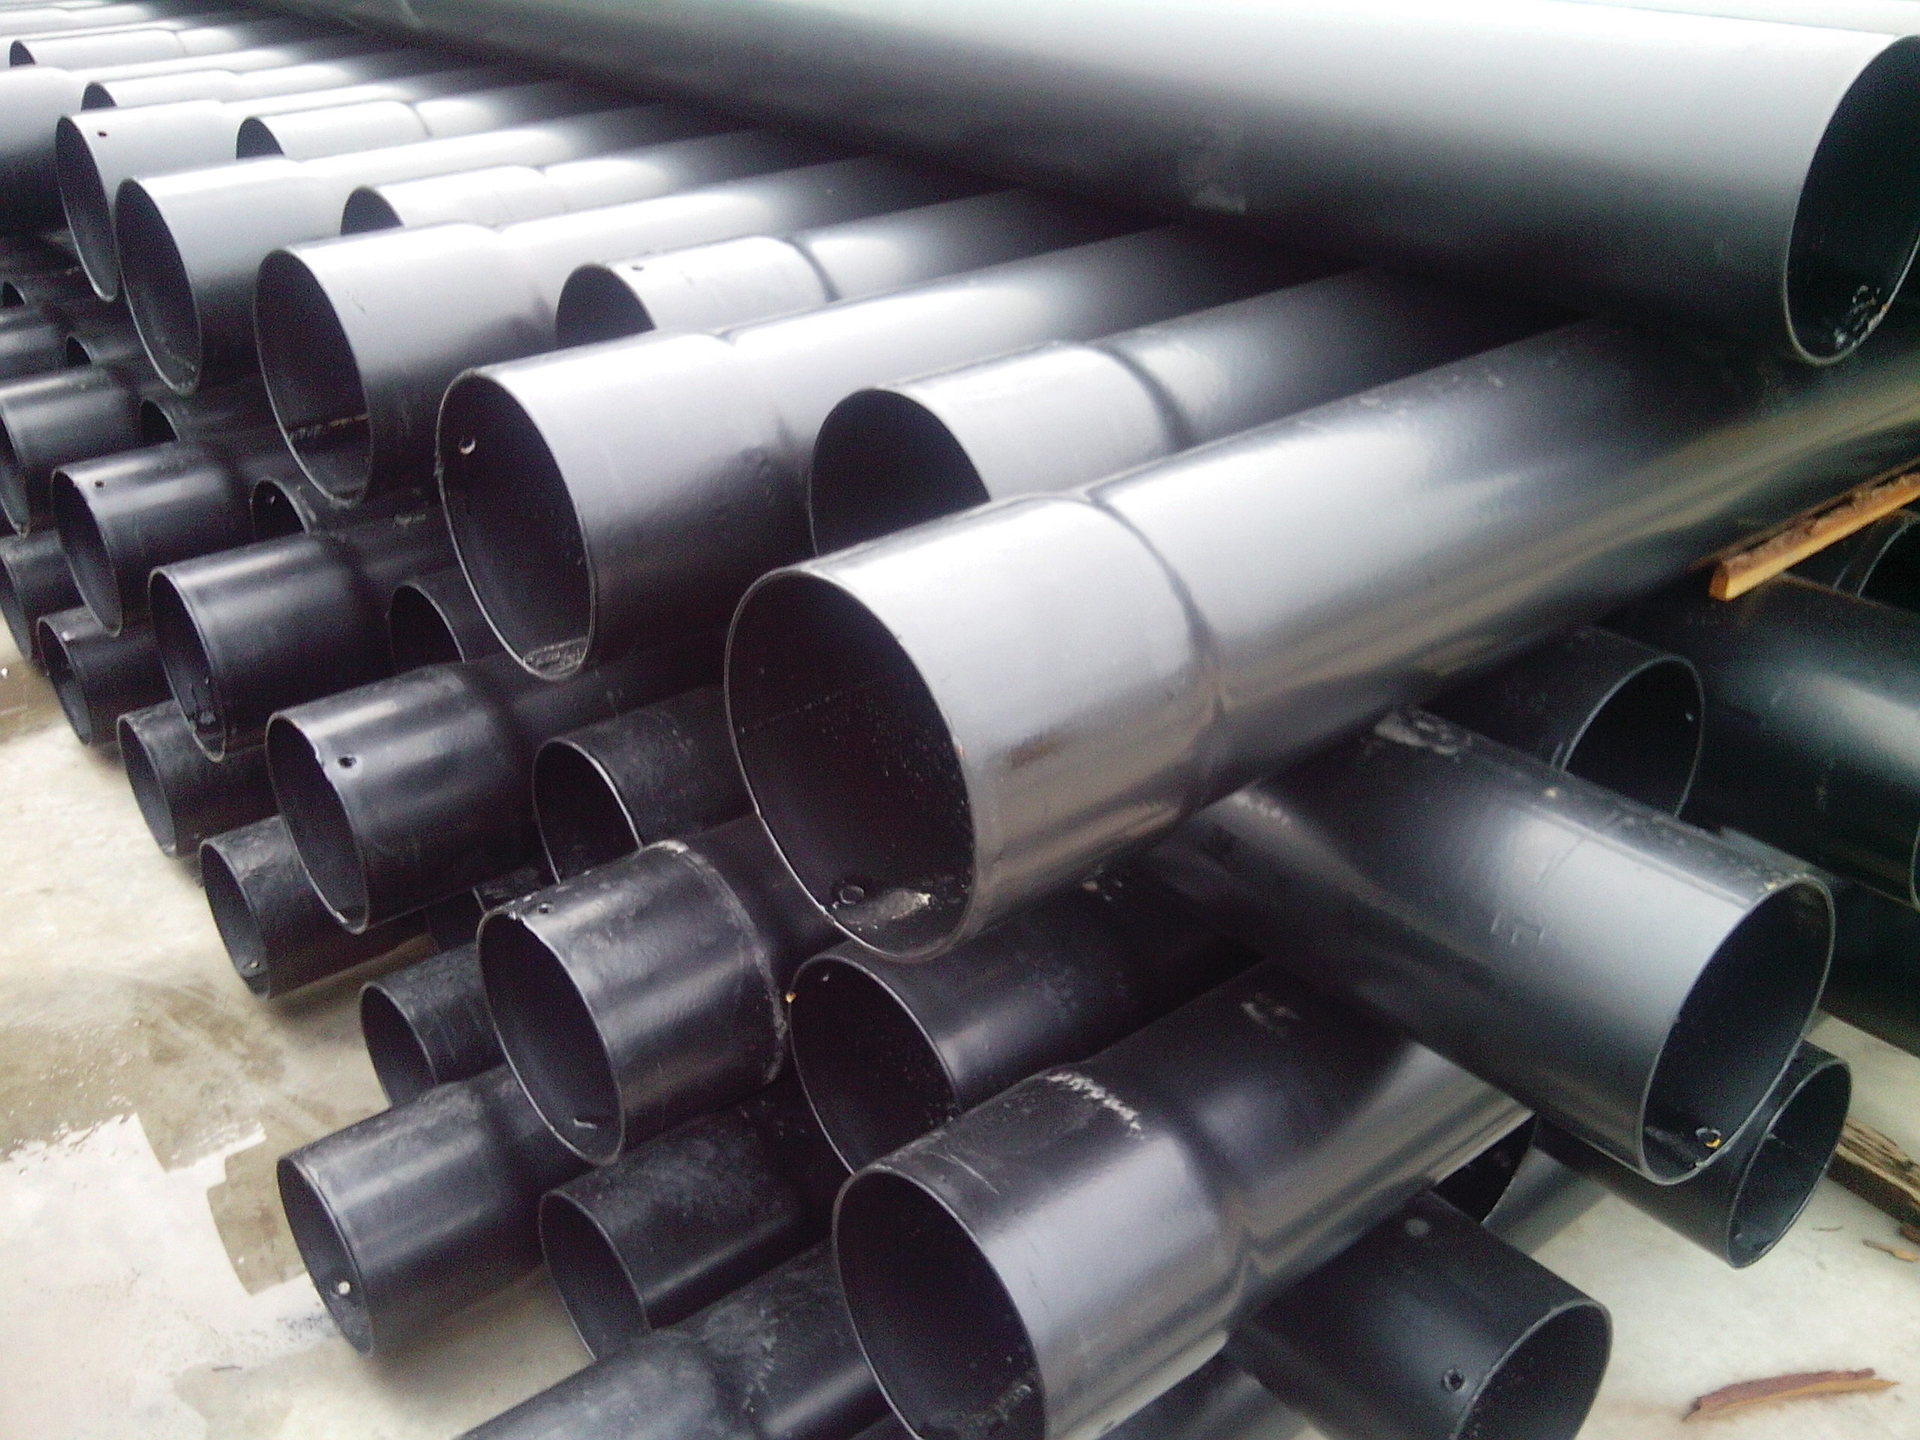 普洱涂塑钢管厂家 400-680-0969 按需订购厚度